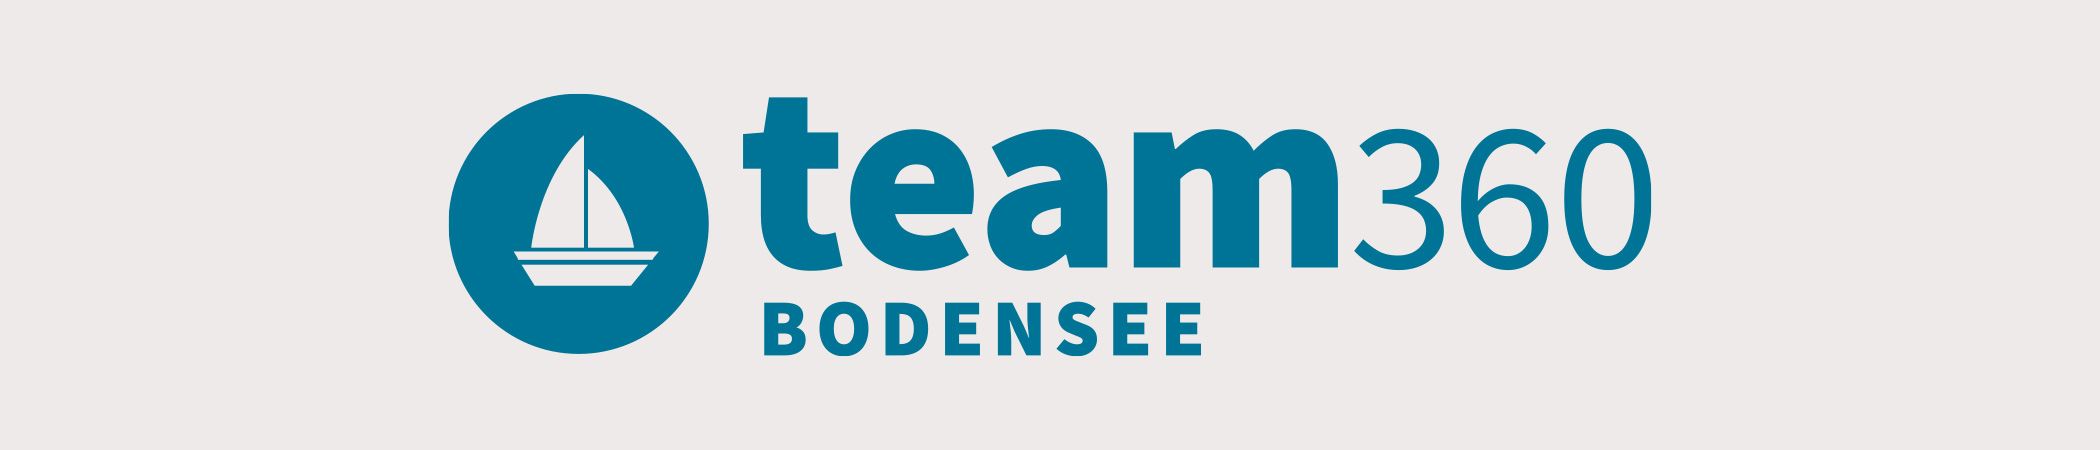 Team Bodensee | 360 Grad Rundgänge am Bodensee